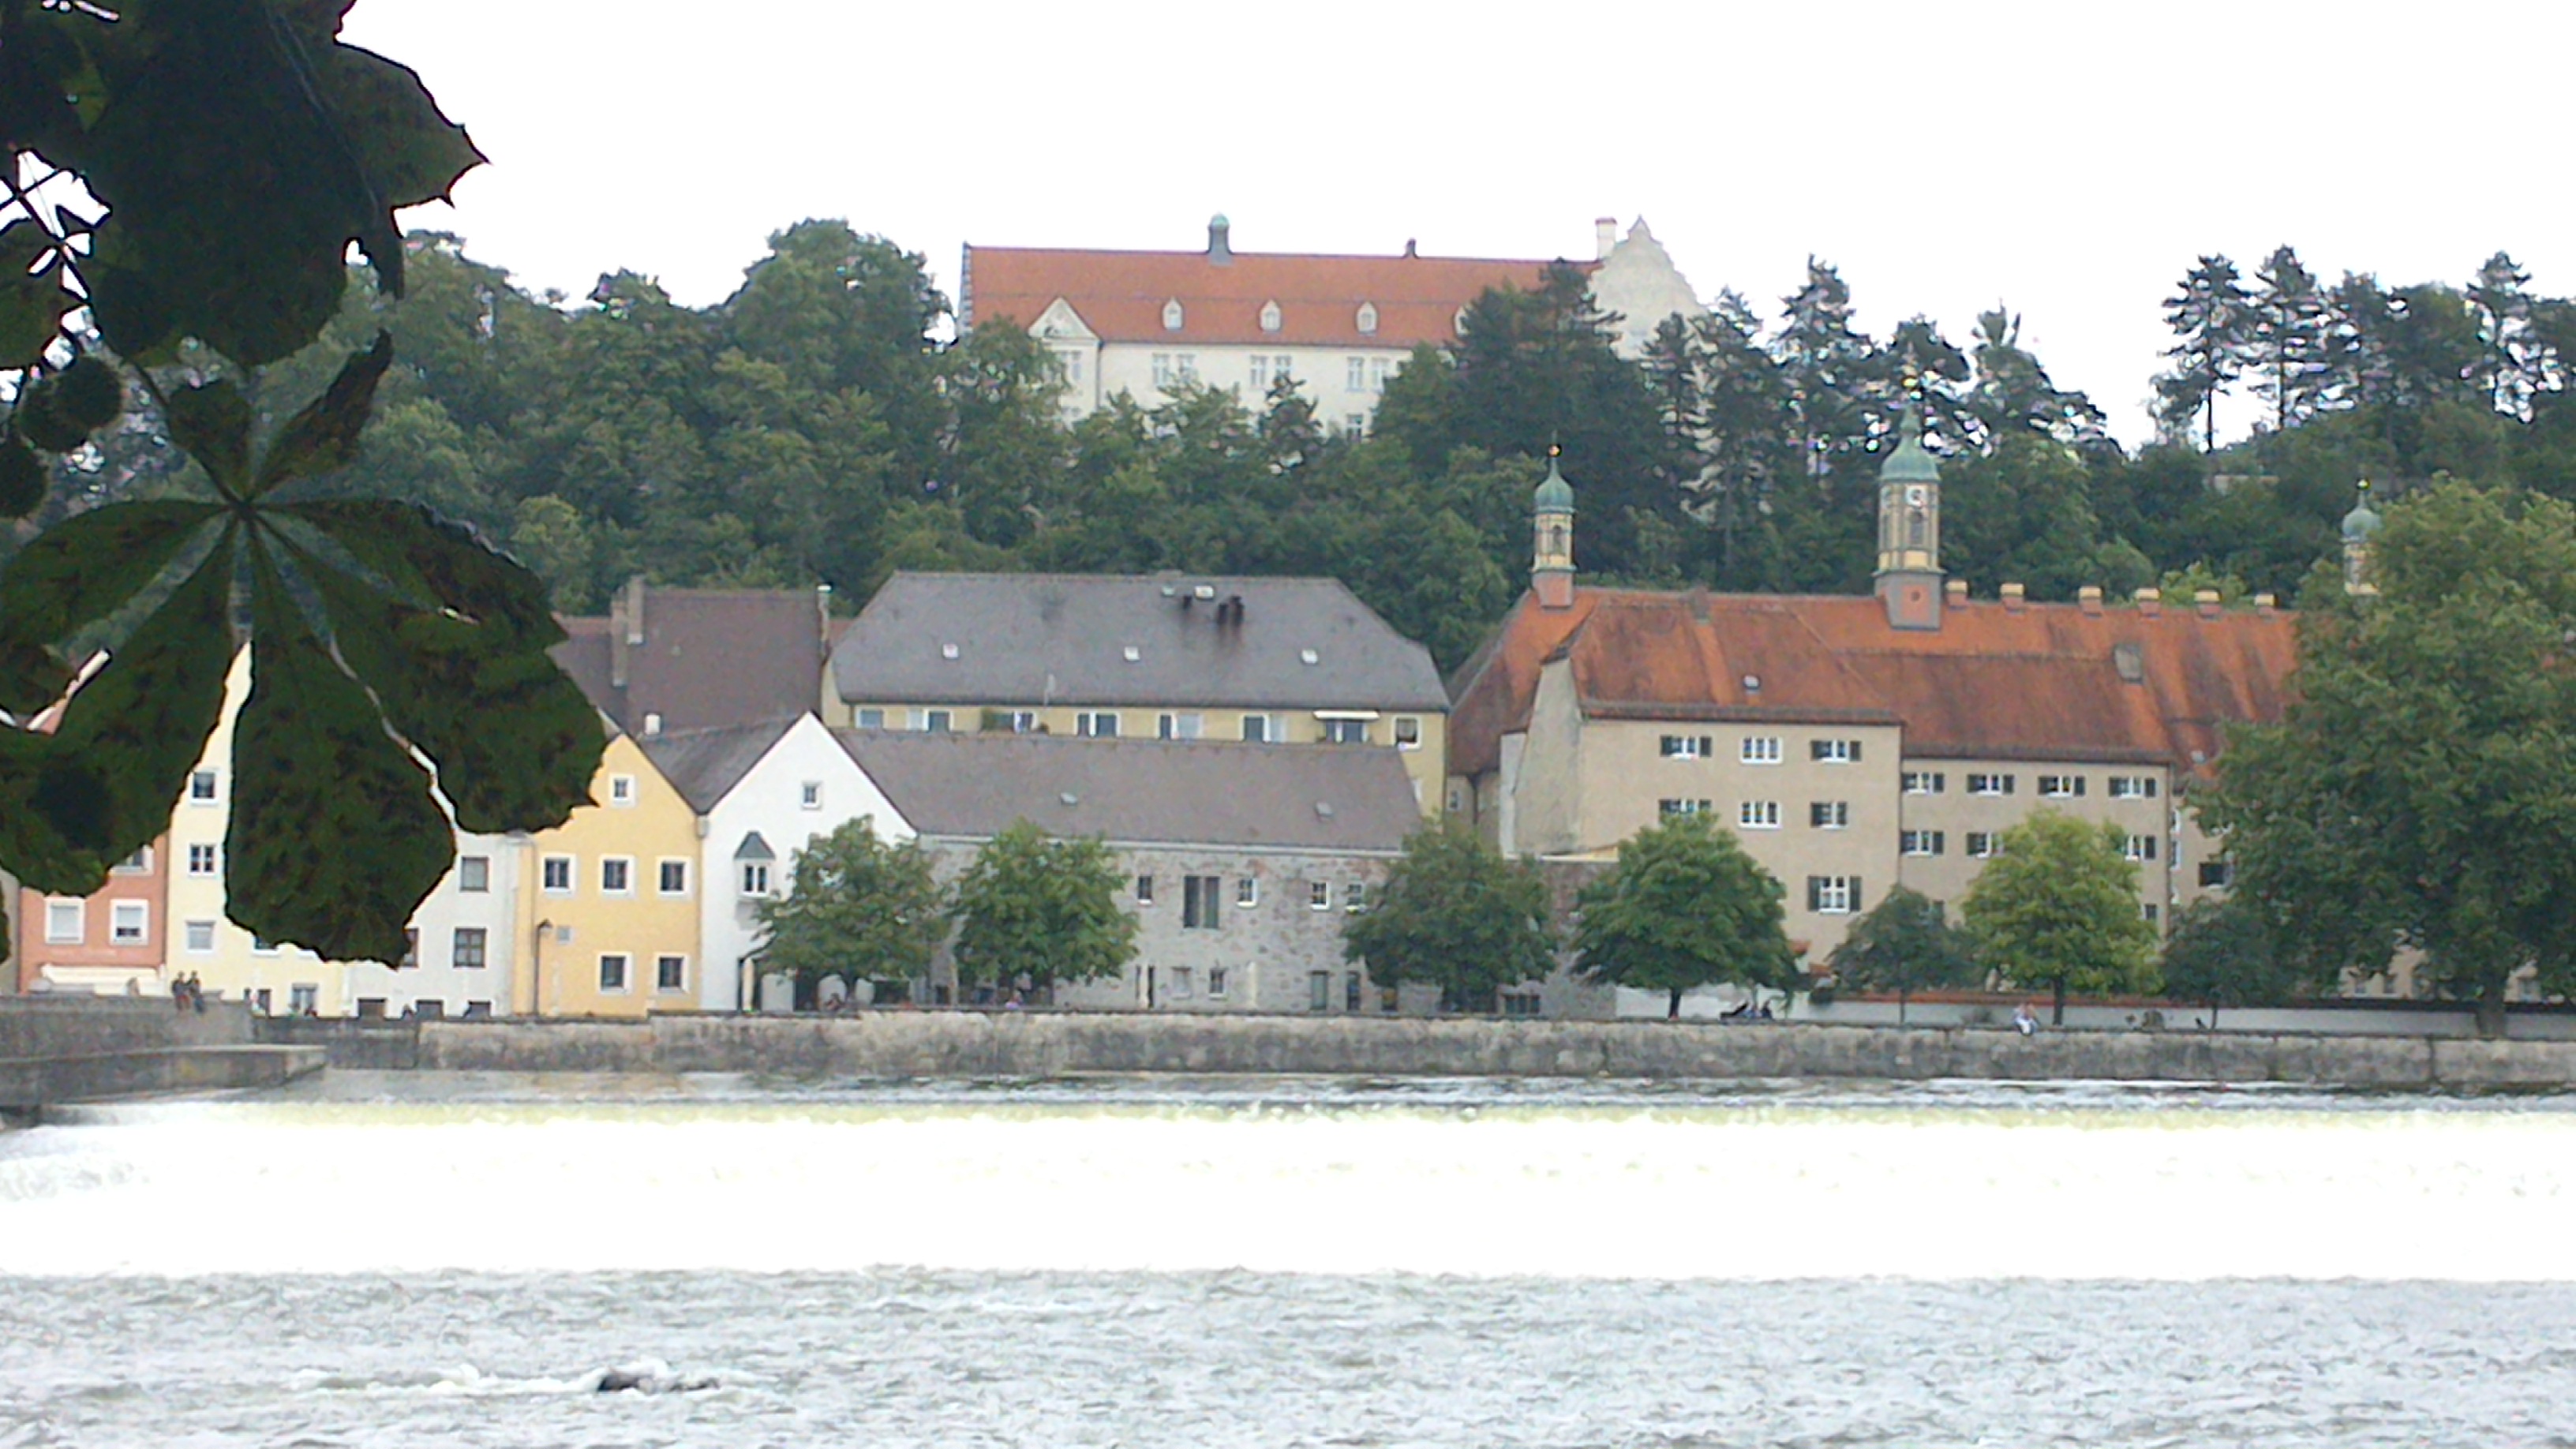 Blick auf Landsberg am Lech, mit dem Schloss in der Mitte.